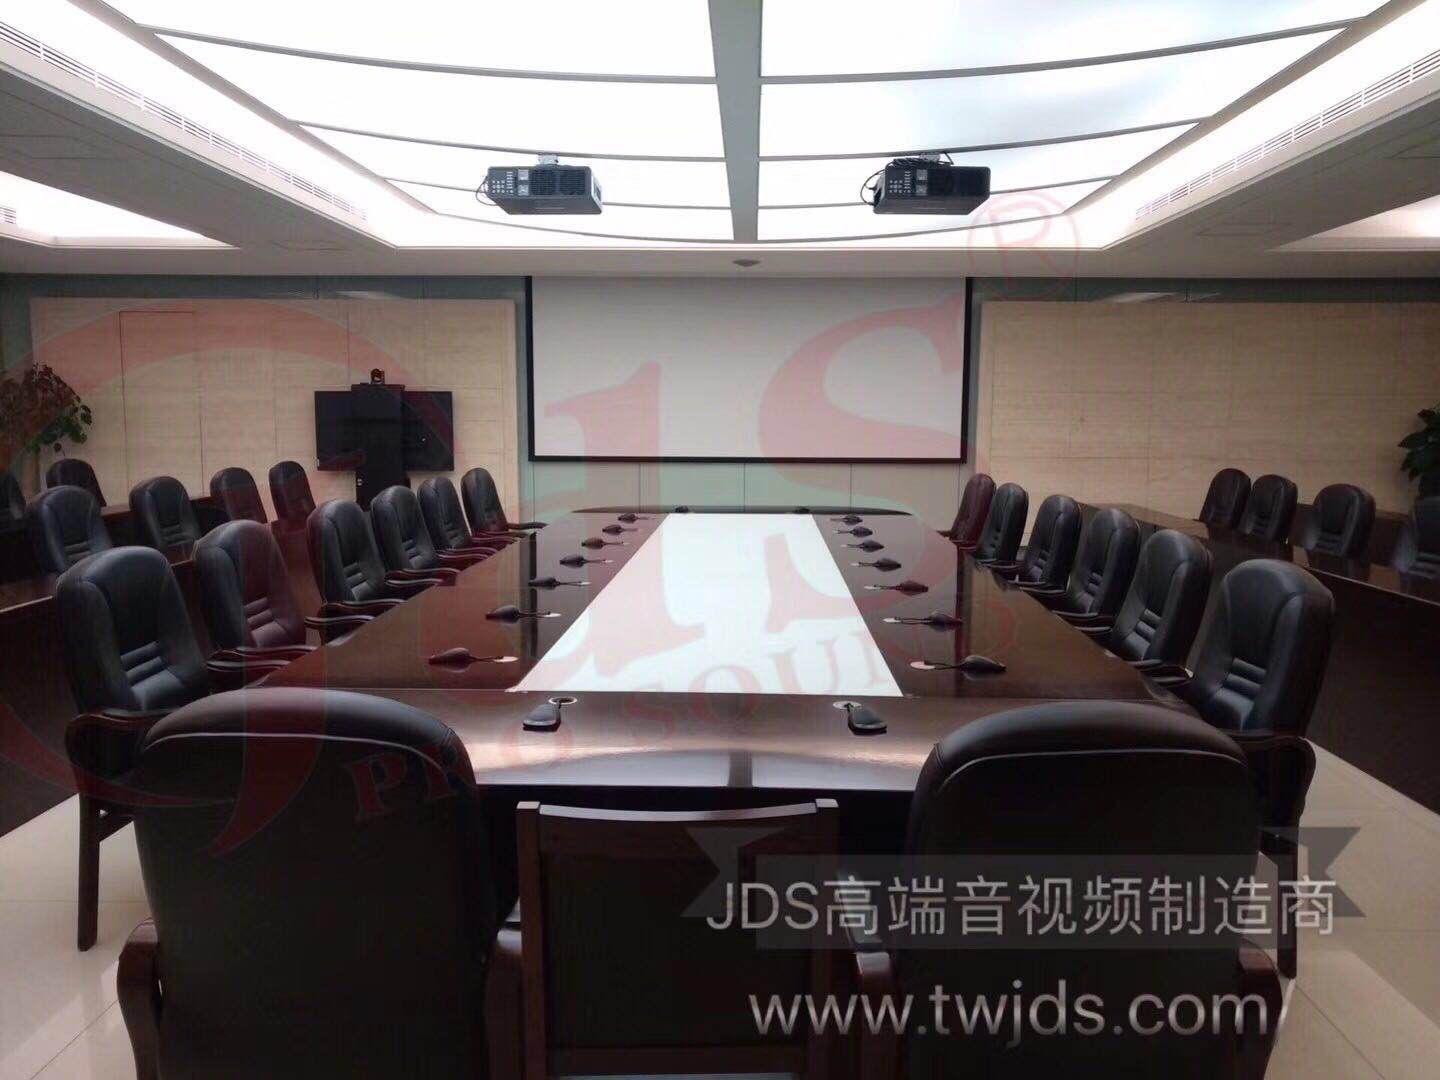 天津市自来水集团有限公司会议中心